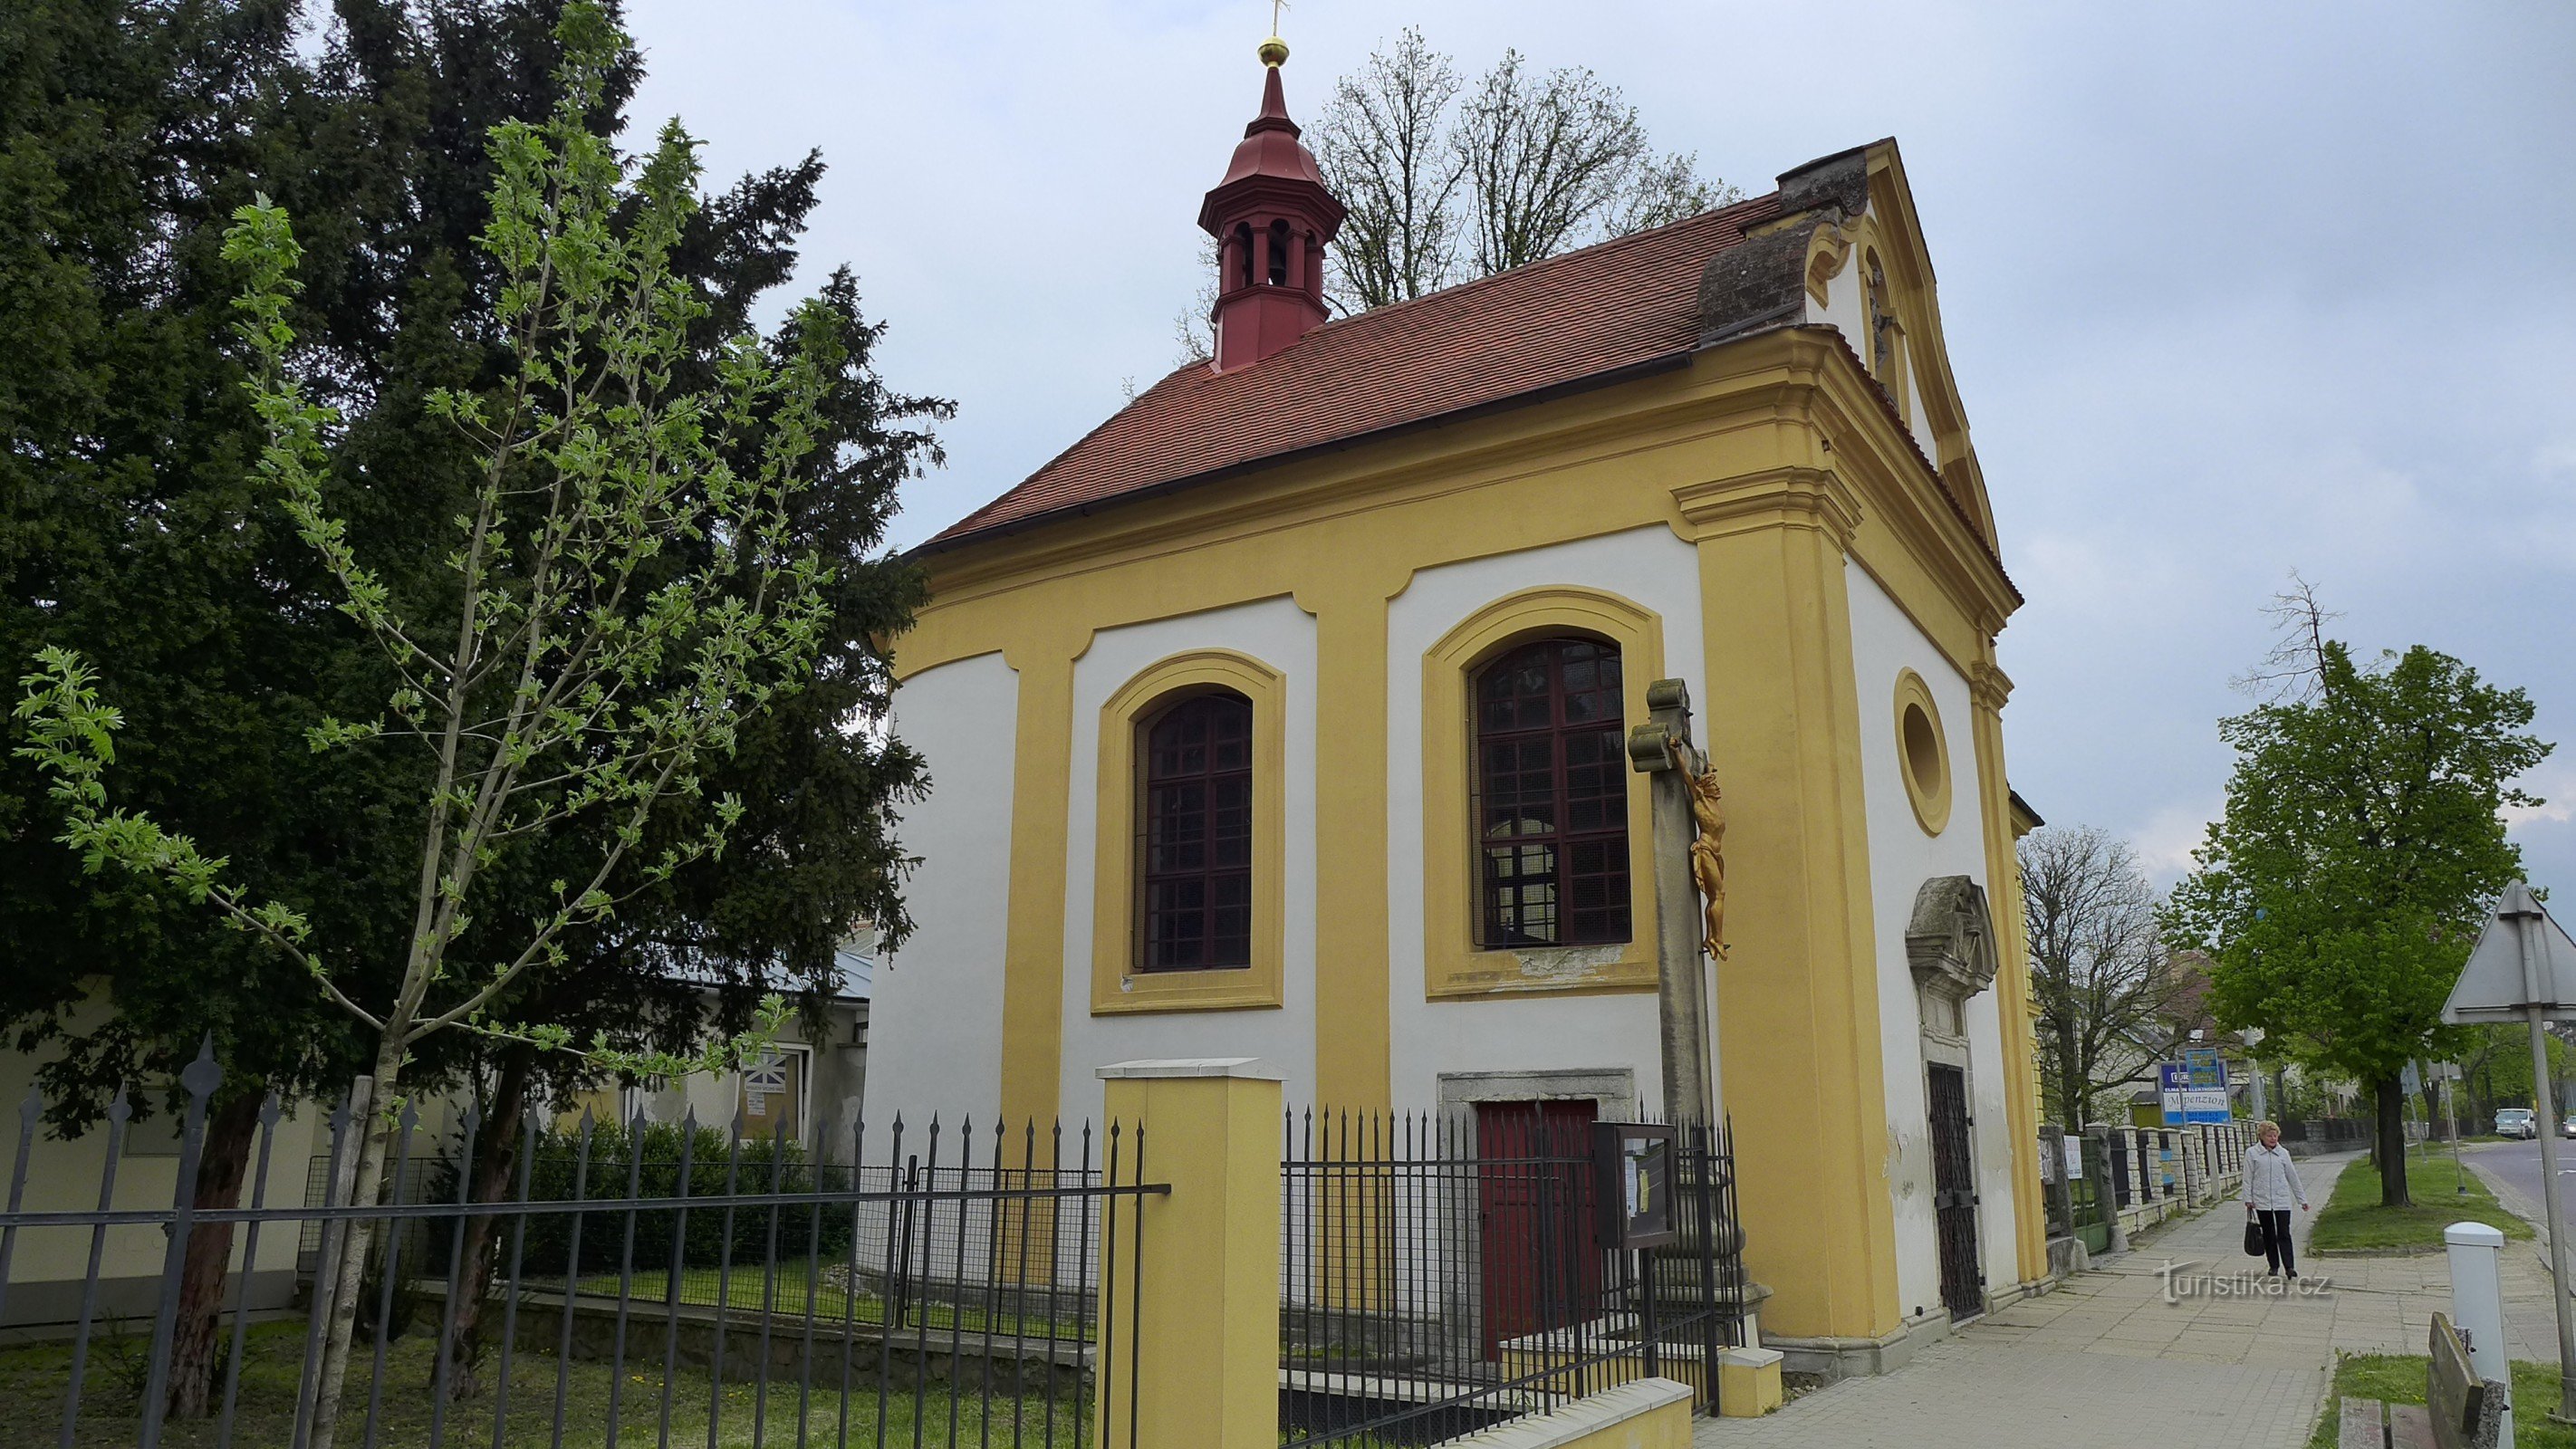 Moravské Budějovice - capilla de St. Jan Nepomucký